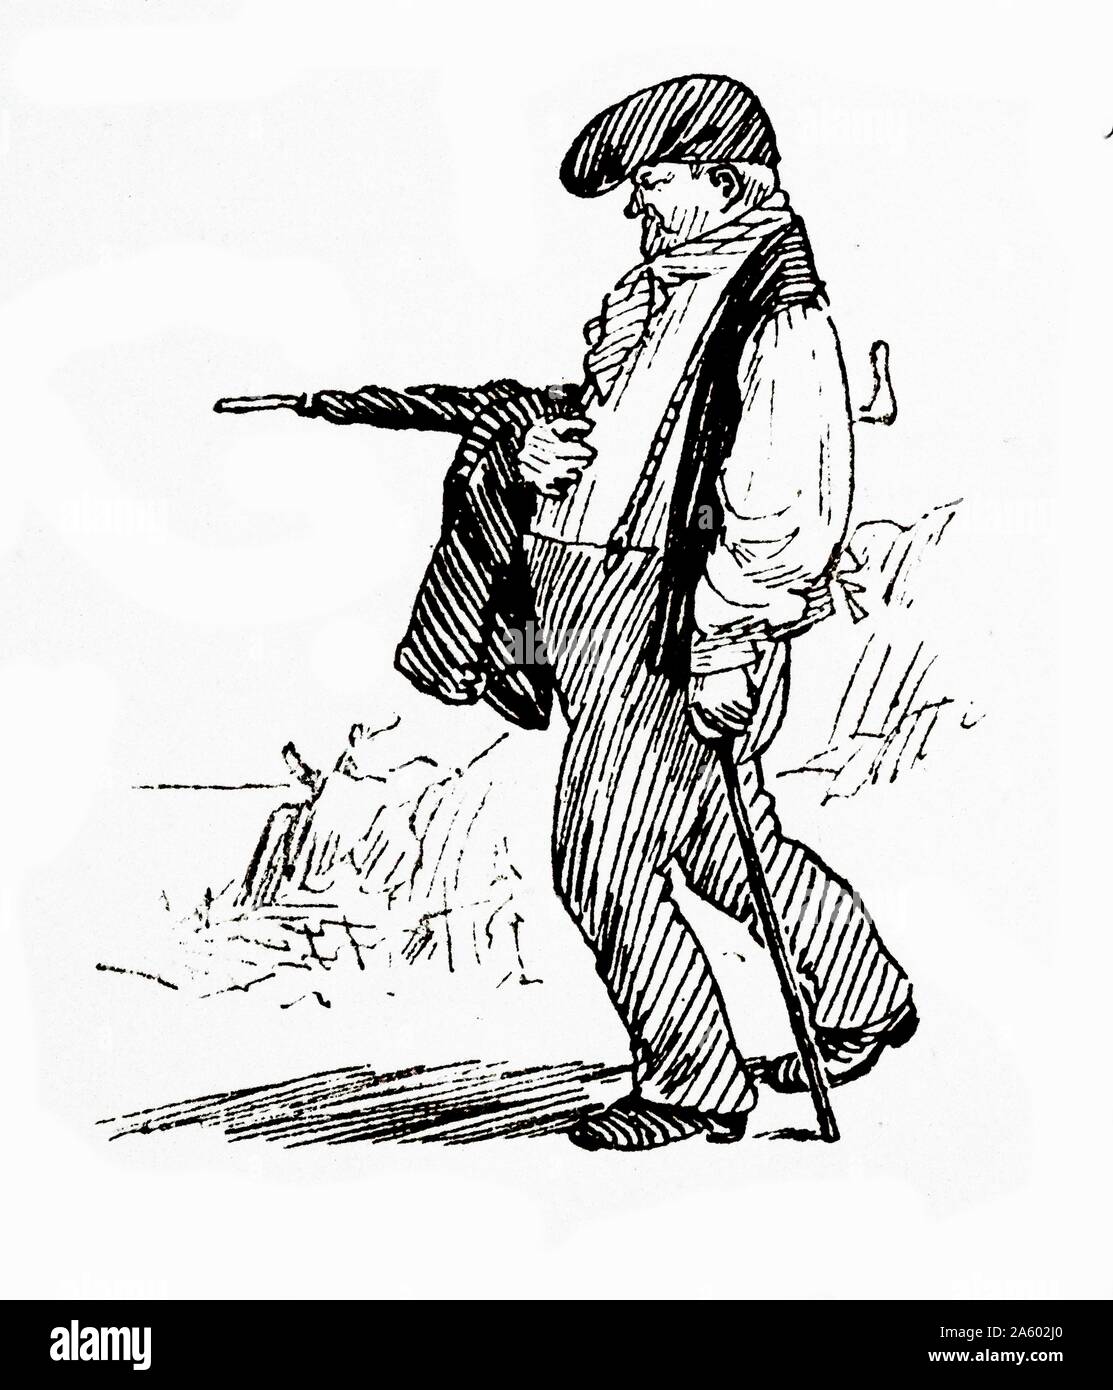 Illustrierte Reise Korrespondenz von Monaco von Randolph Caldecott 1846-1886. Stellt einen lokalen Mann mit Barett und Regenschirm c1882 Stockfoto